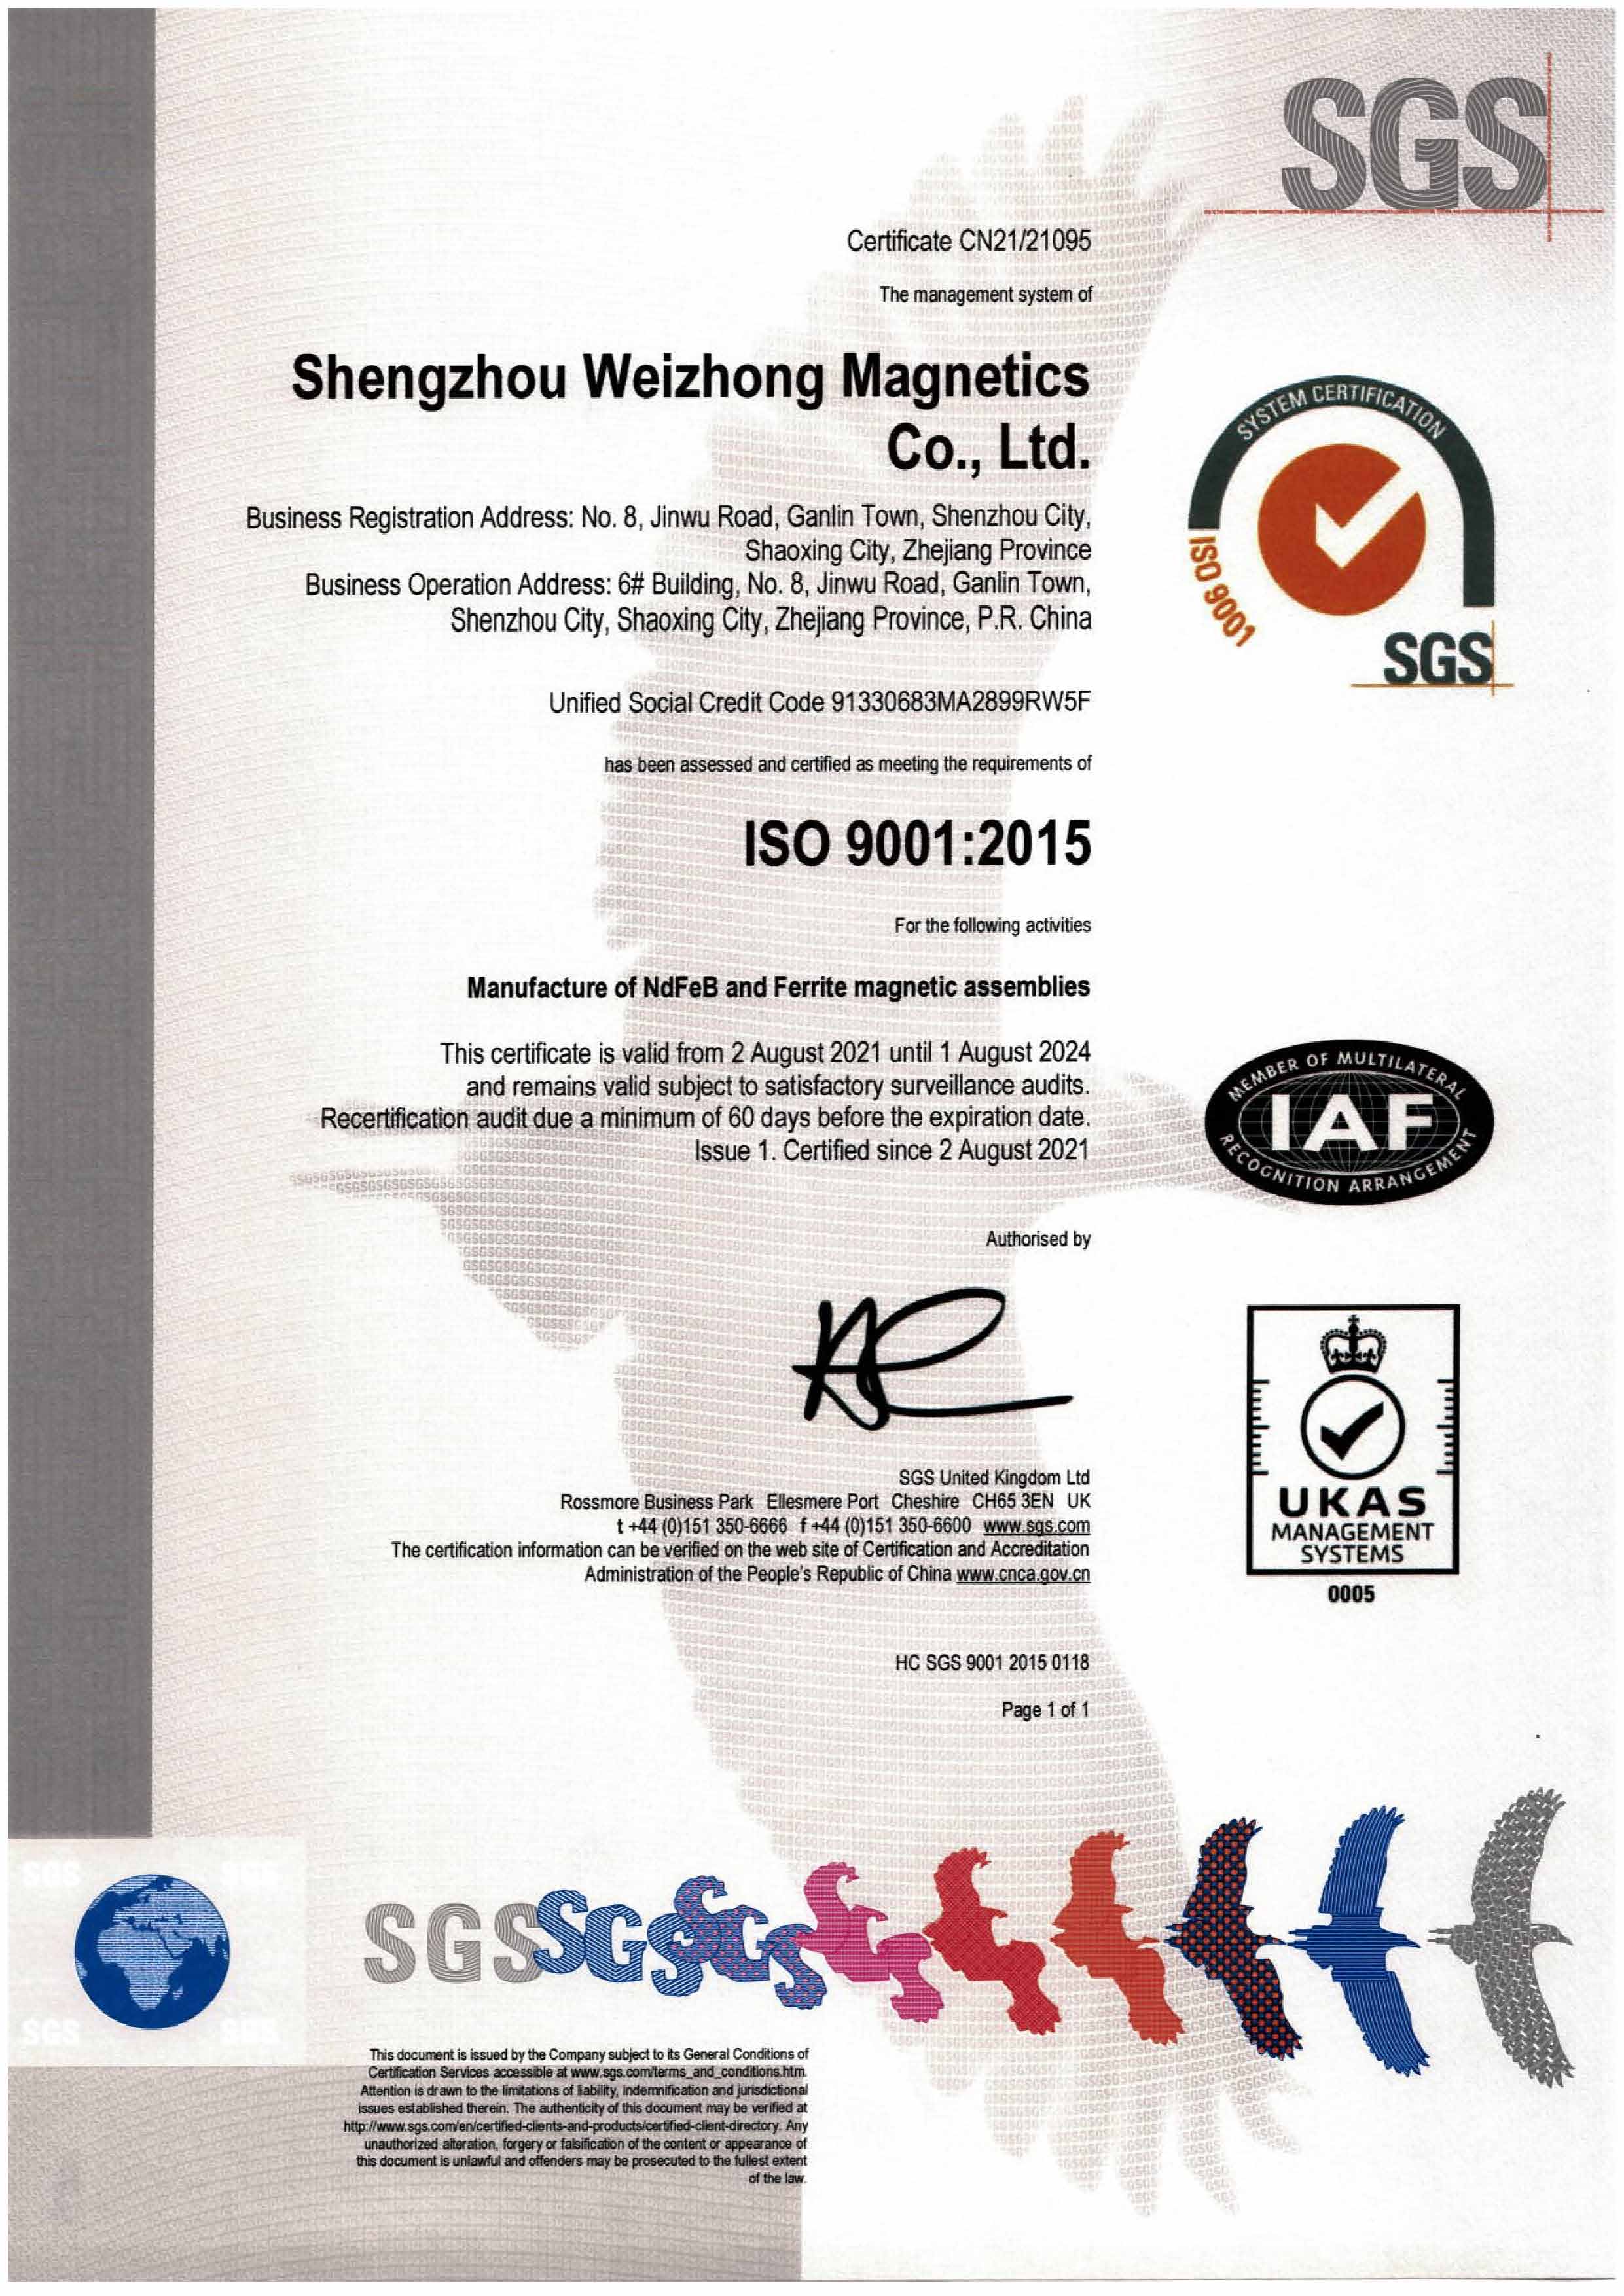 weizhong-magnetics-iso-9001-2015-certification.jpg